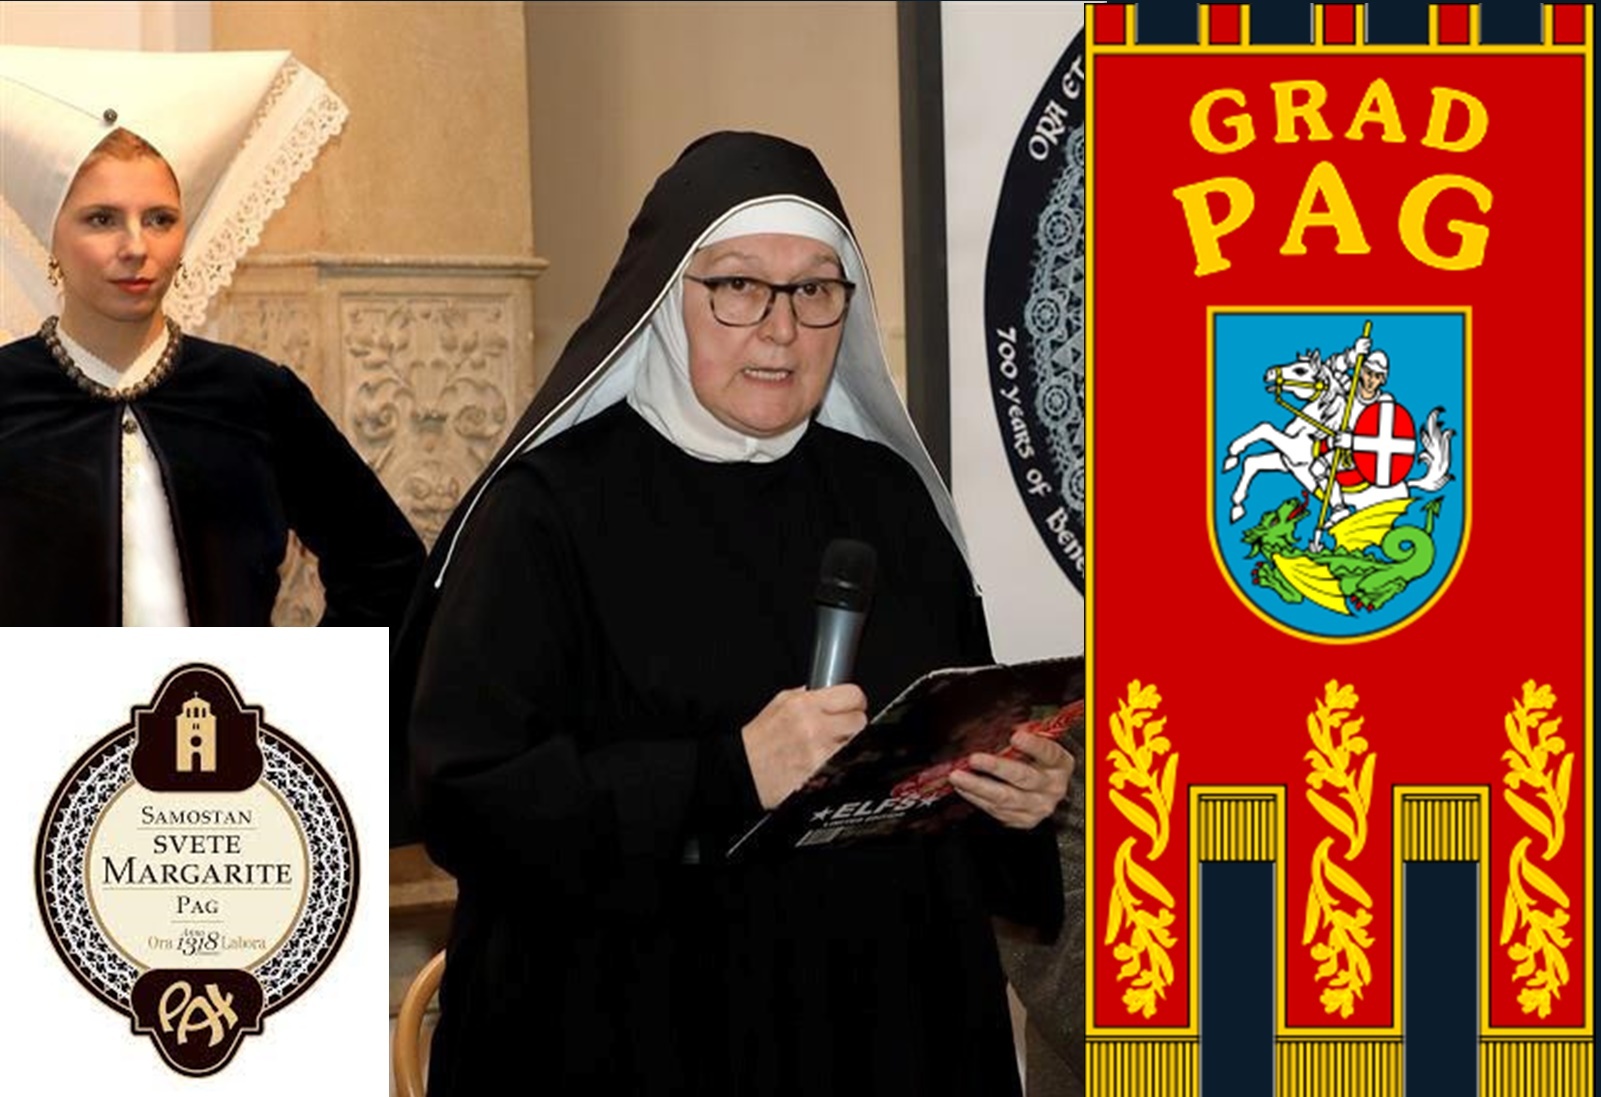 Grad Pag se učlanio u Udrugu Ars benedictinarum Benediktinskog samostana sv. Margarite